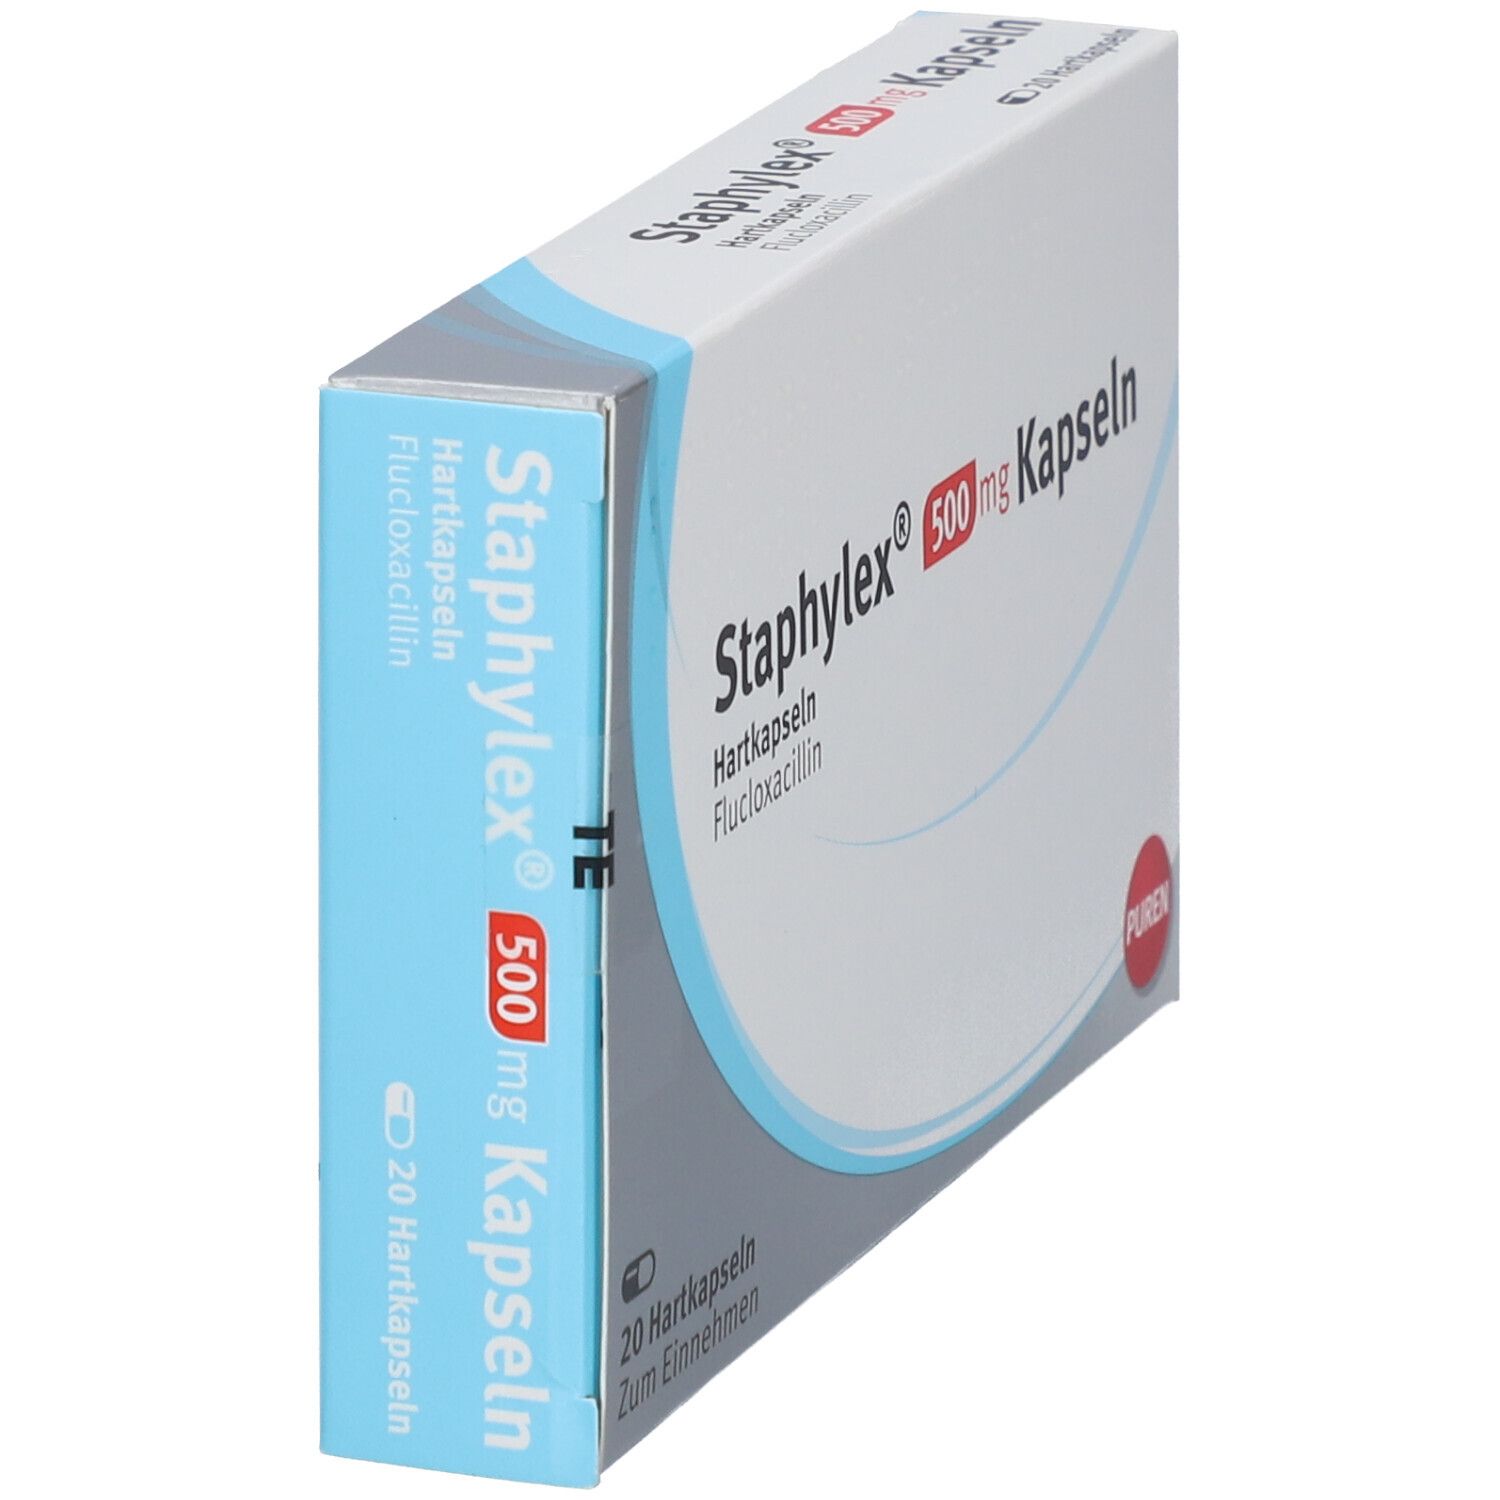 Staphylex® 500 mg Kapseln